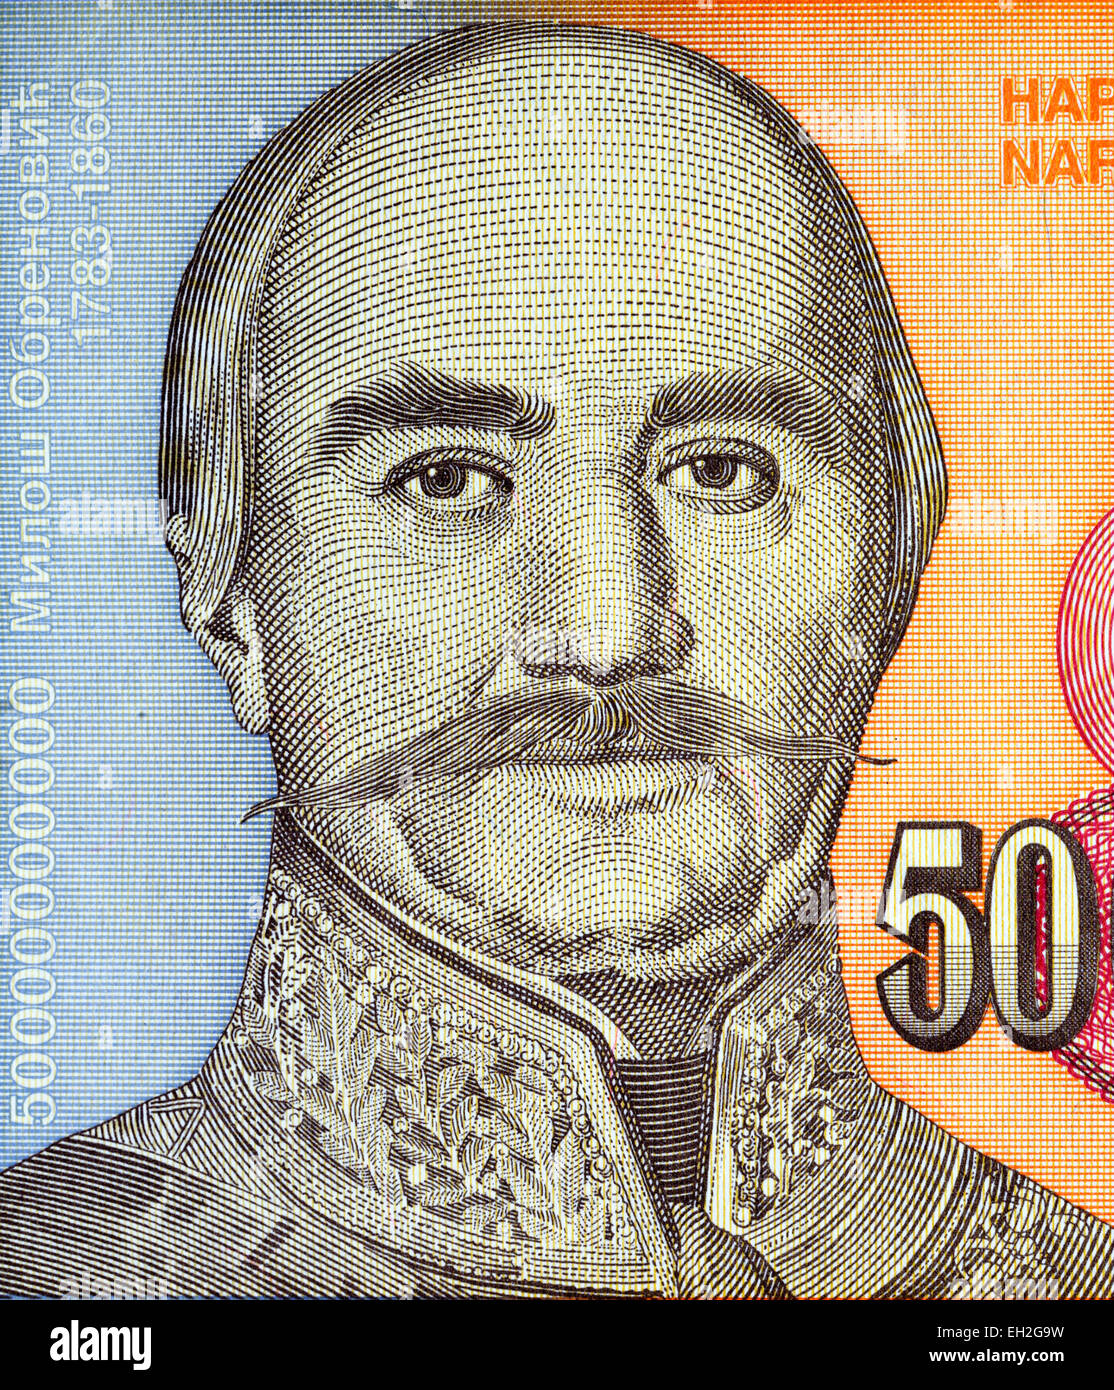 Prince Milan Obrenovic from 50 milliard dinars banknote, Jugoslavia, 1993 Stock Photo